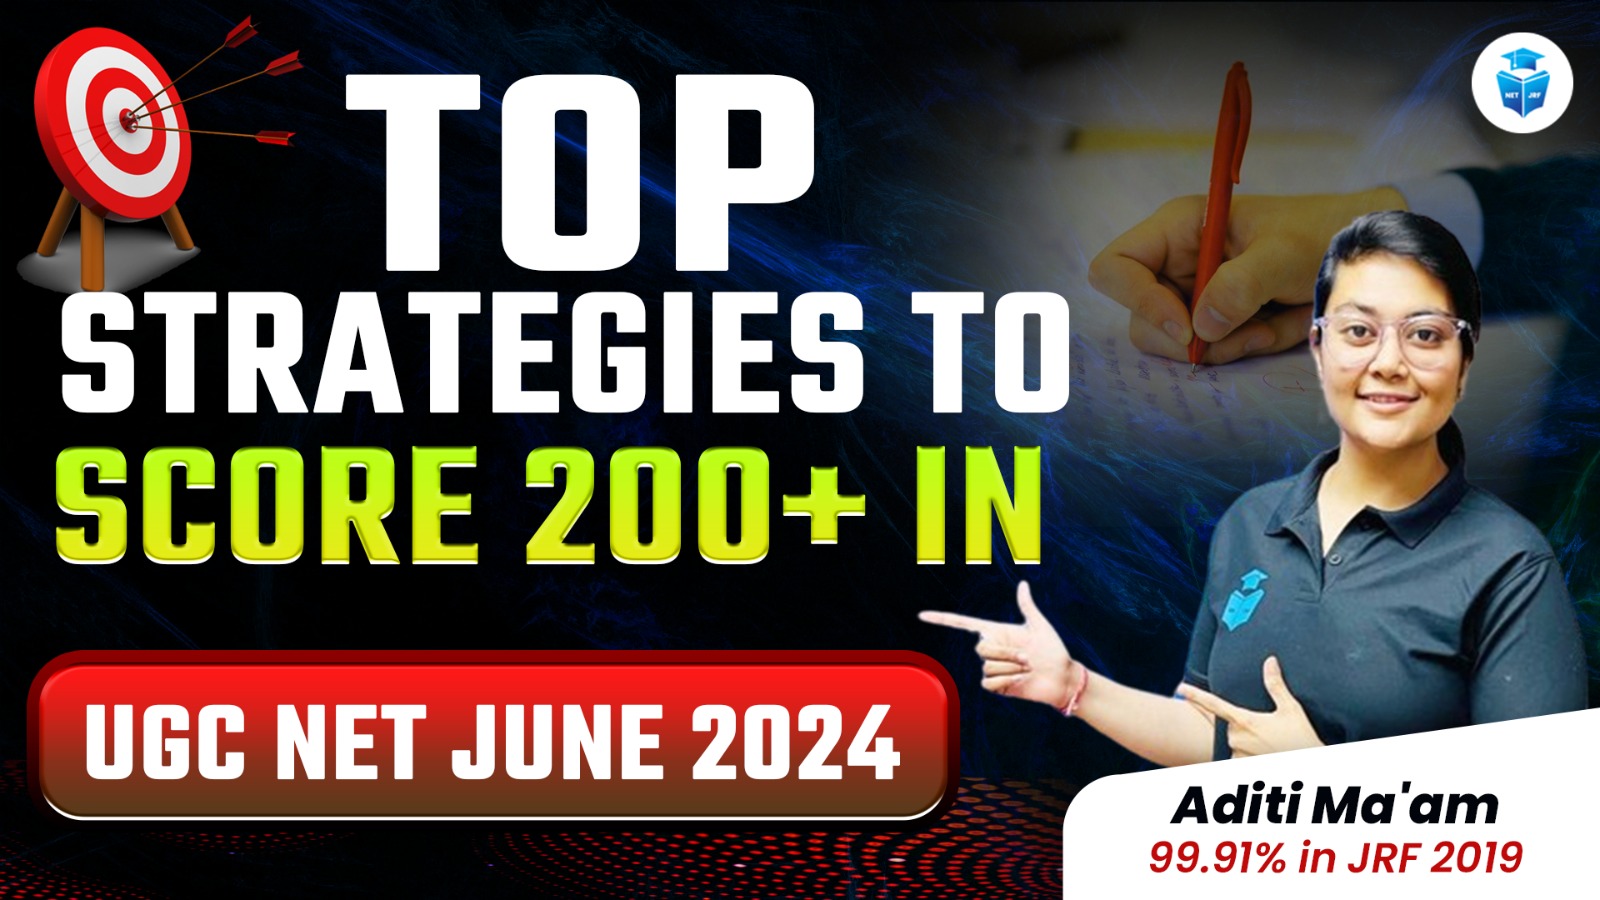 Top Strategies to Score 200+ in UGC NET June 2024